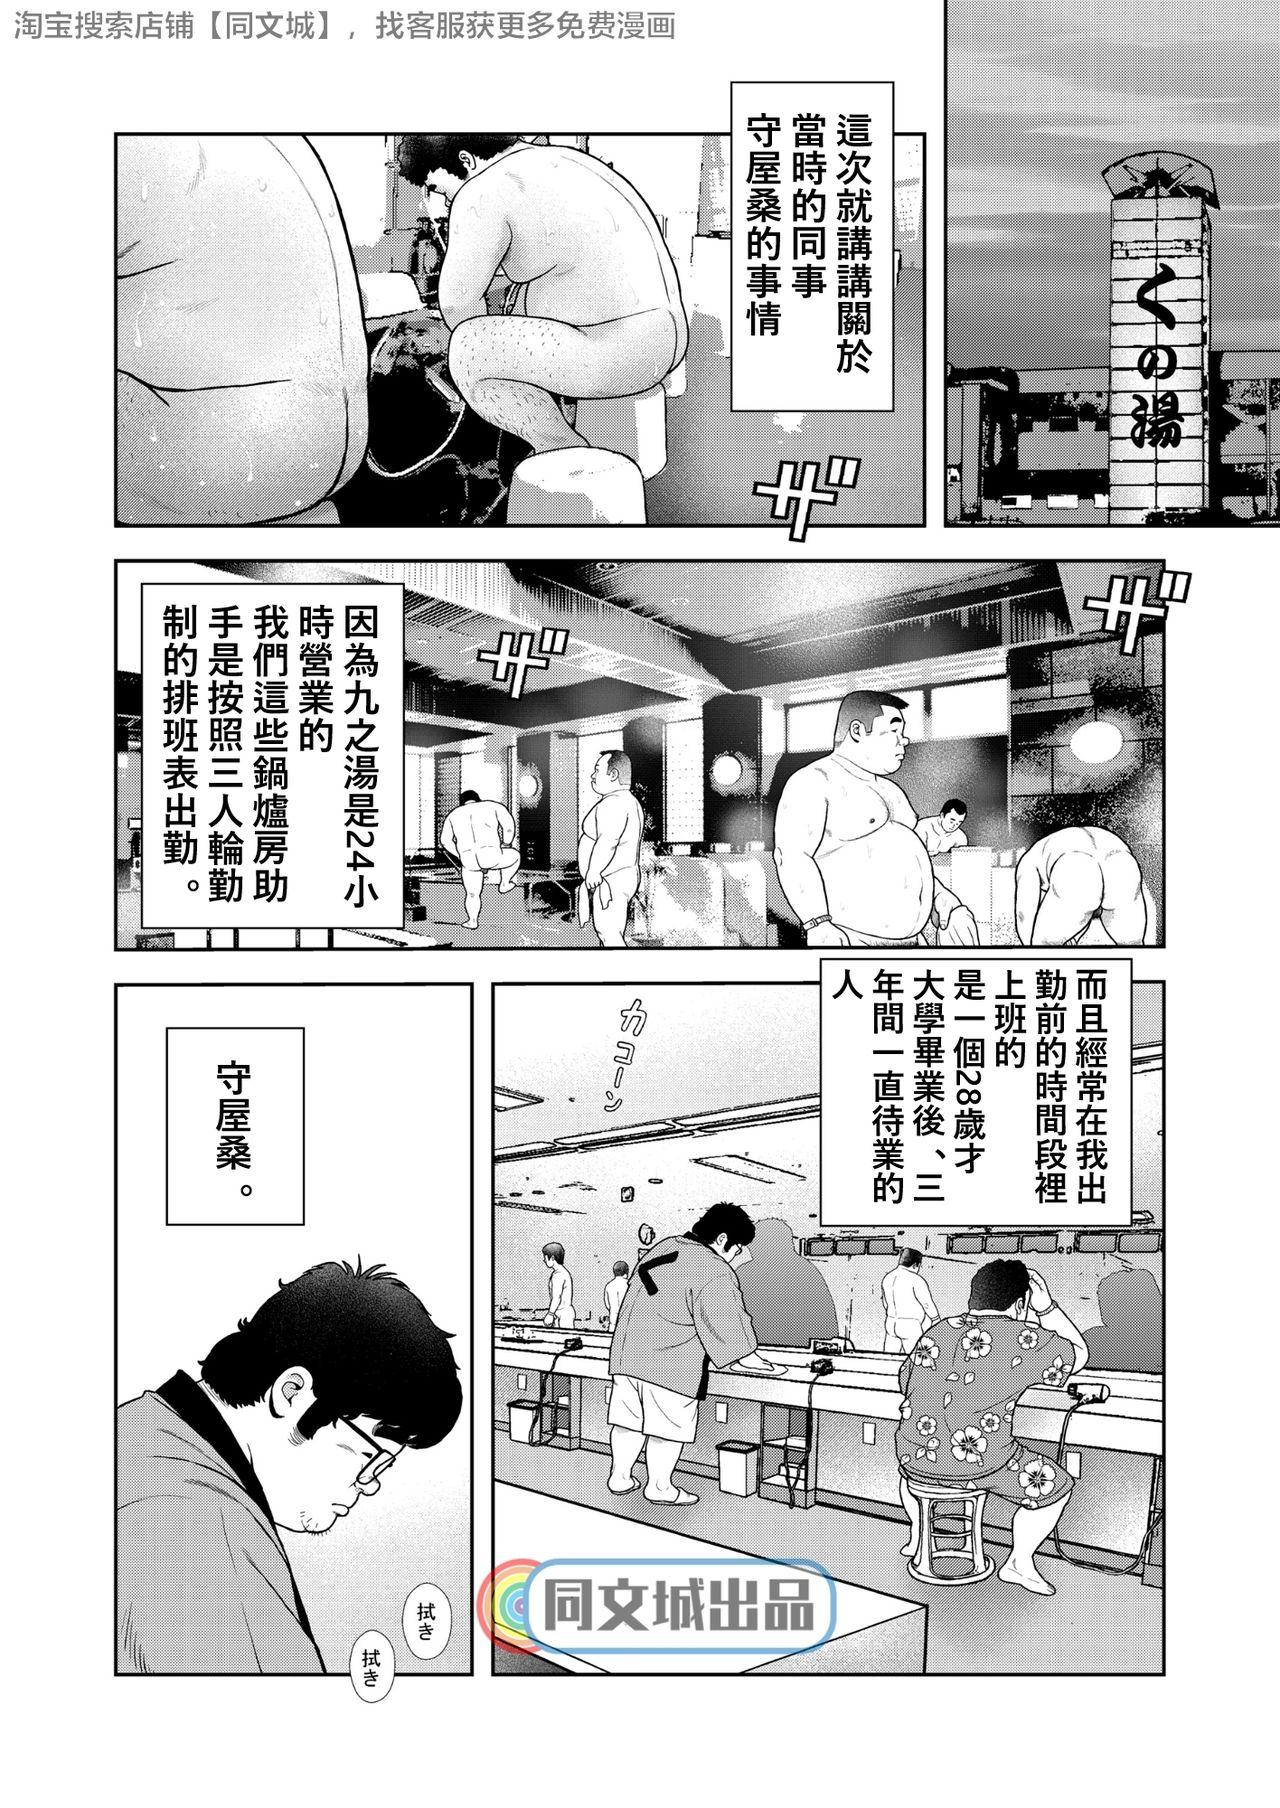 Leche Kunoyu Gohatsume Shinju no Sao - Original Taiwan - Page 2